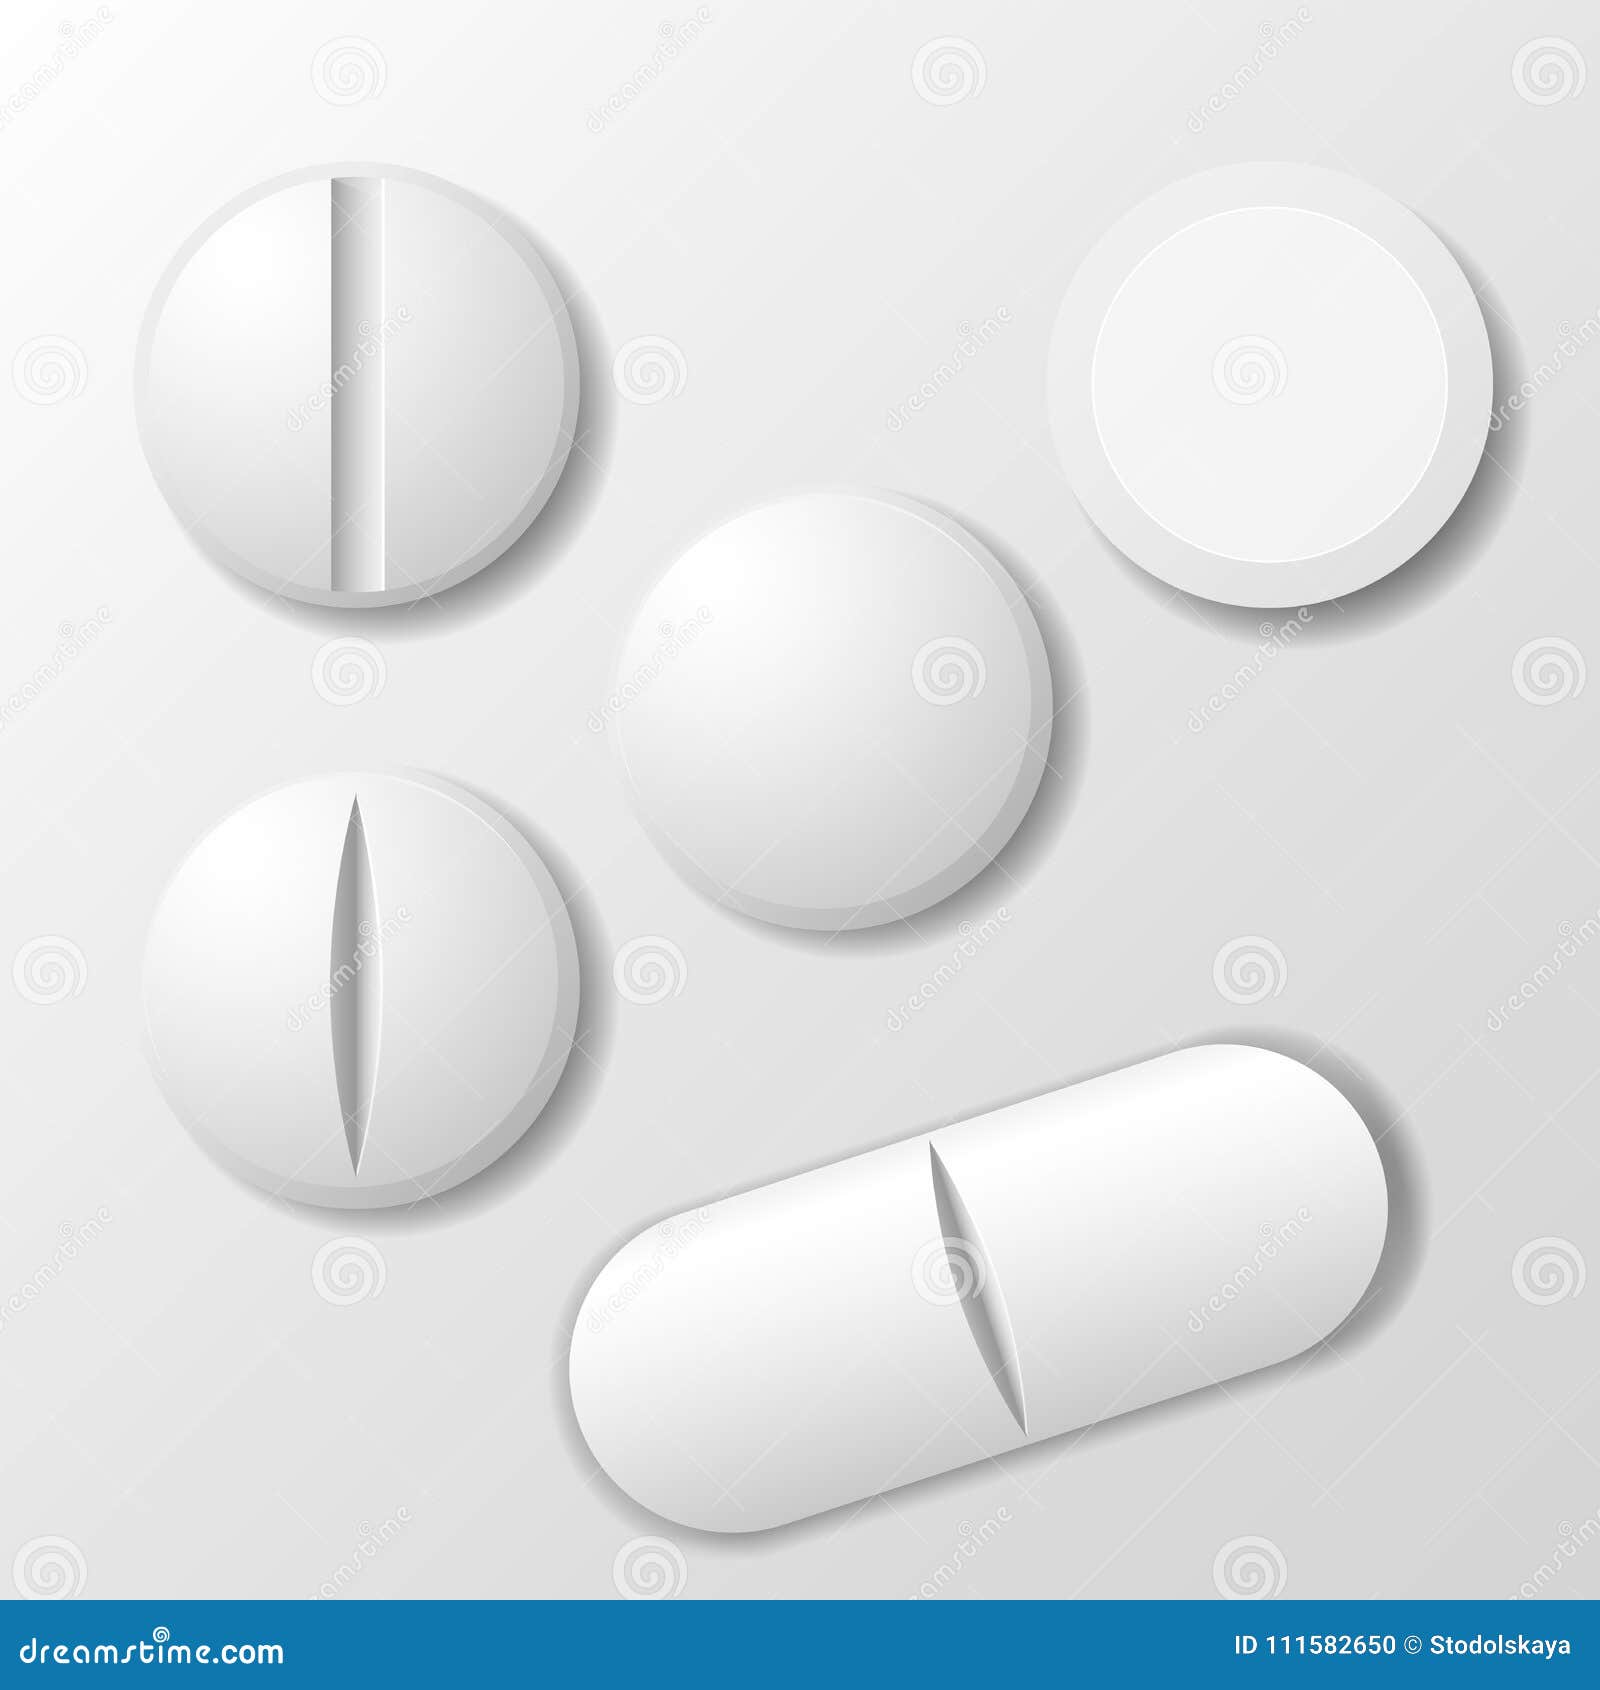 set of medicine pill - tablet drug